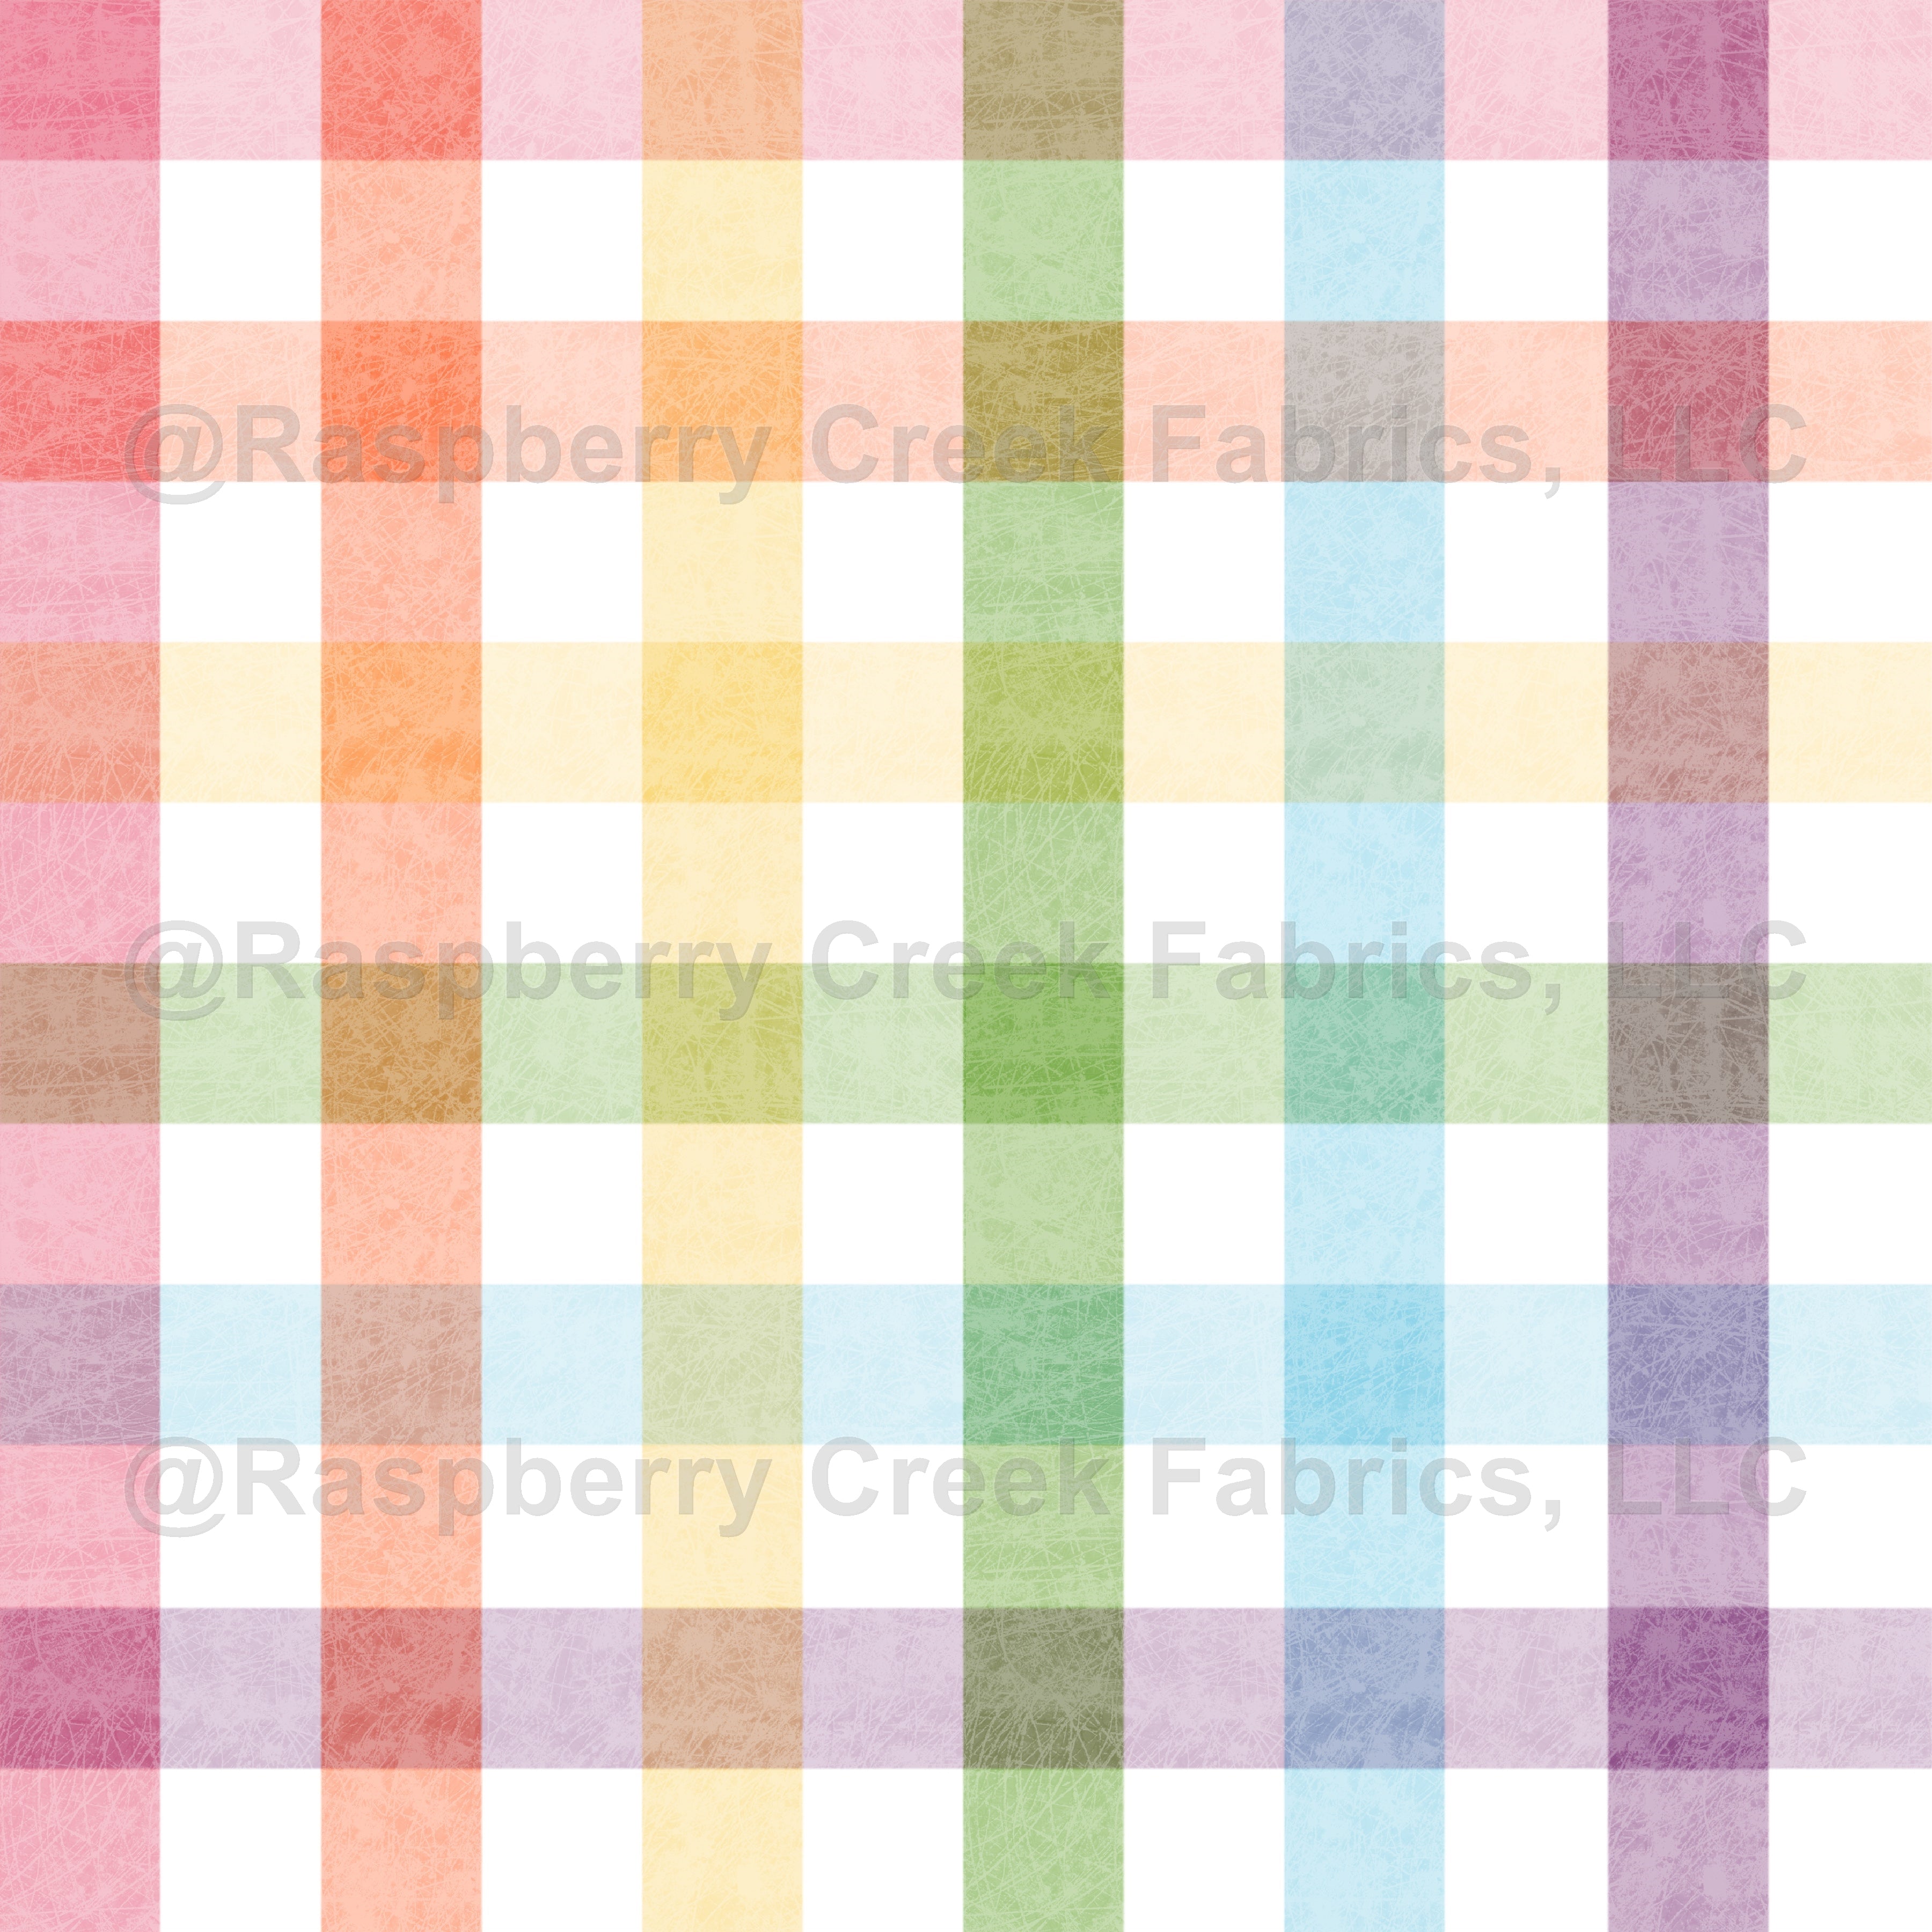 Rainbow Gingham Fabric, Raspberry Creek Fabrics, watermarked